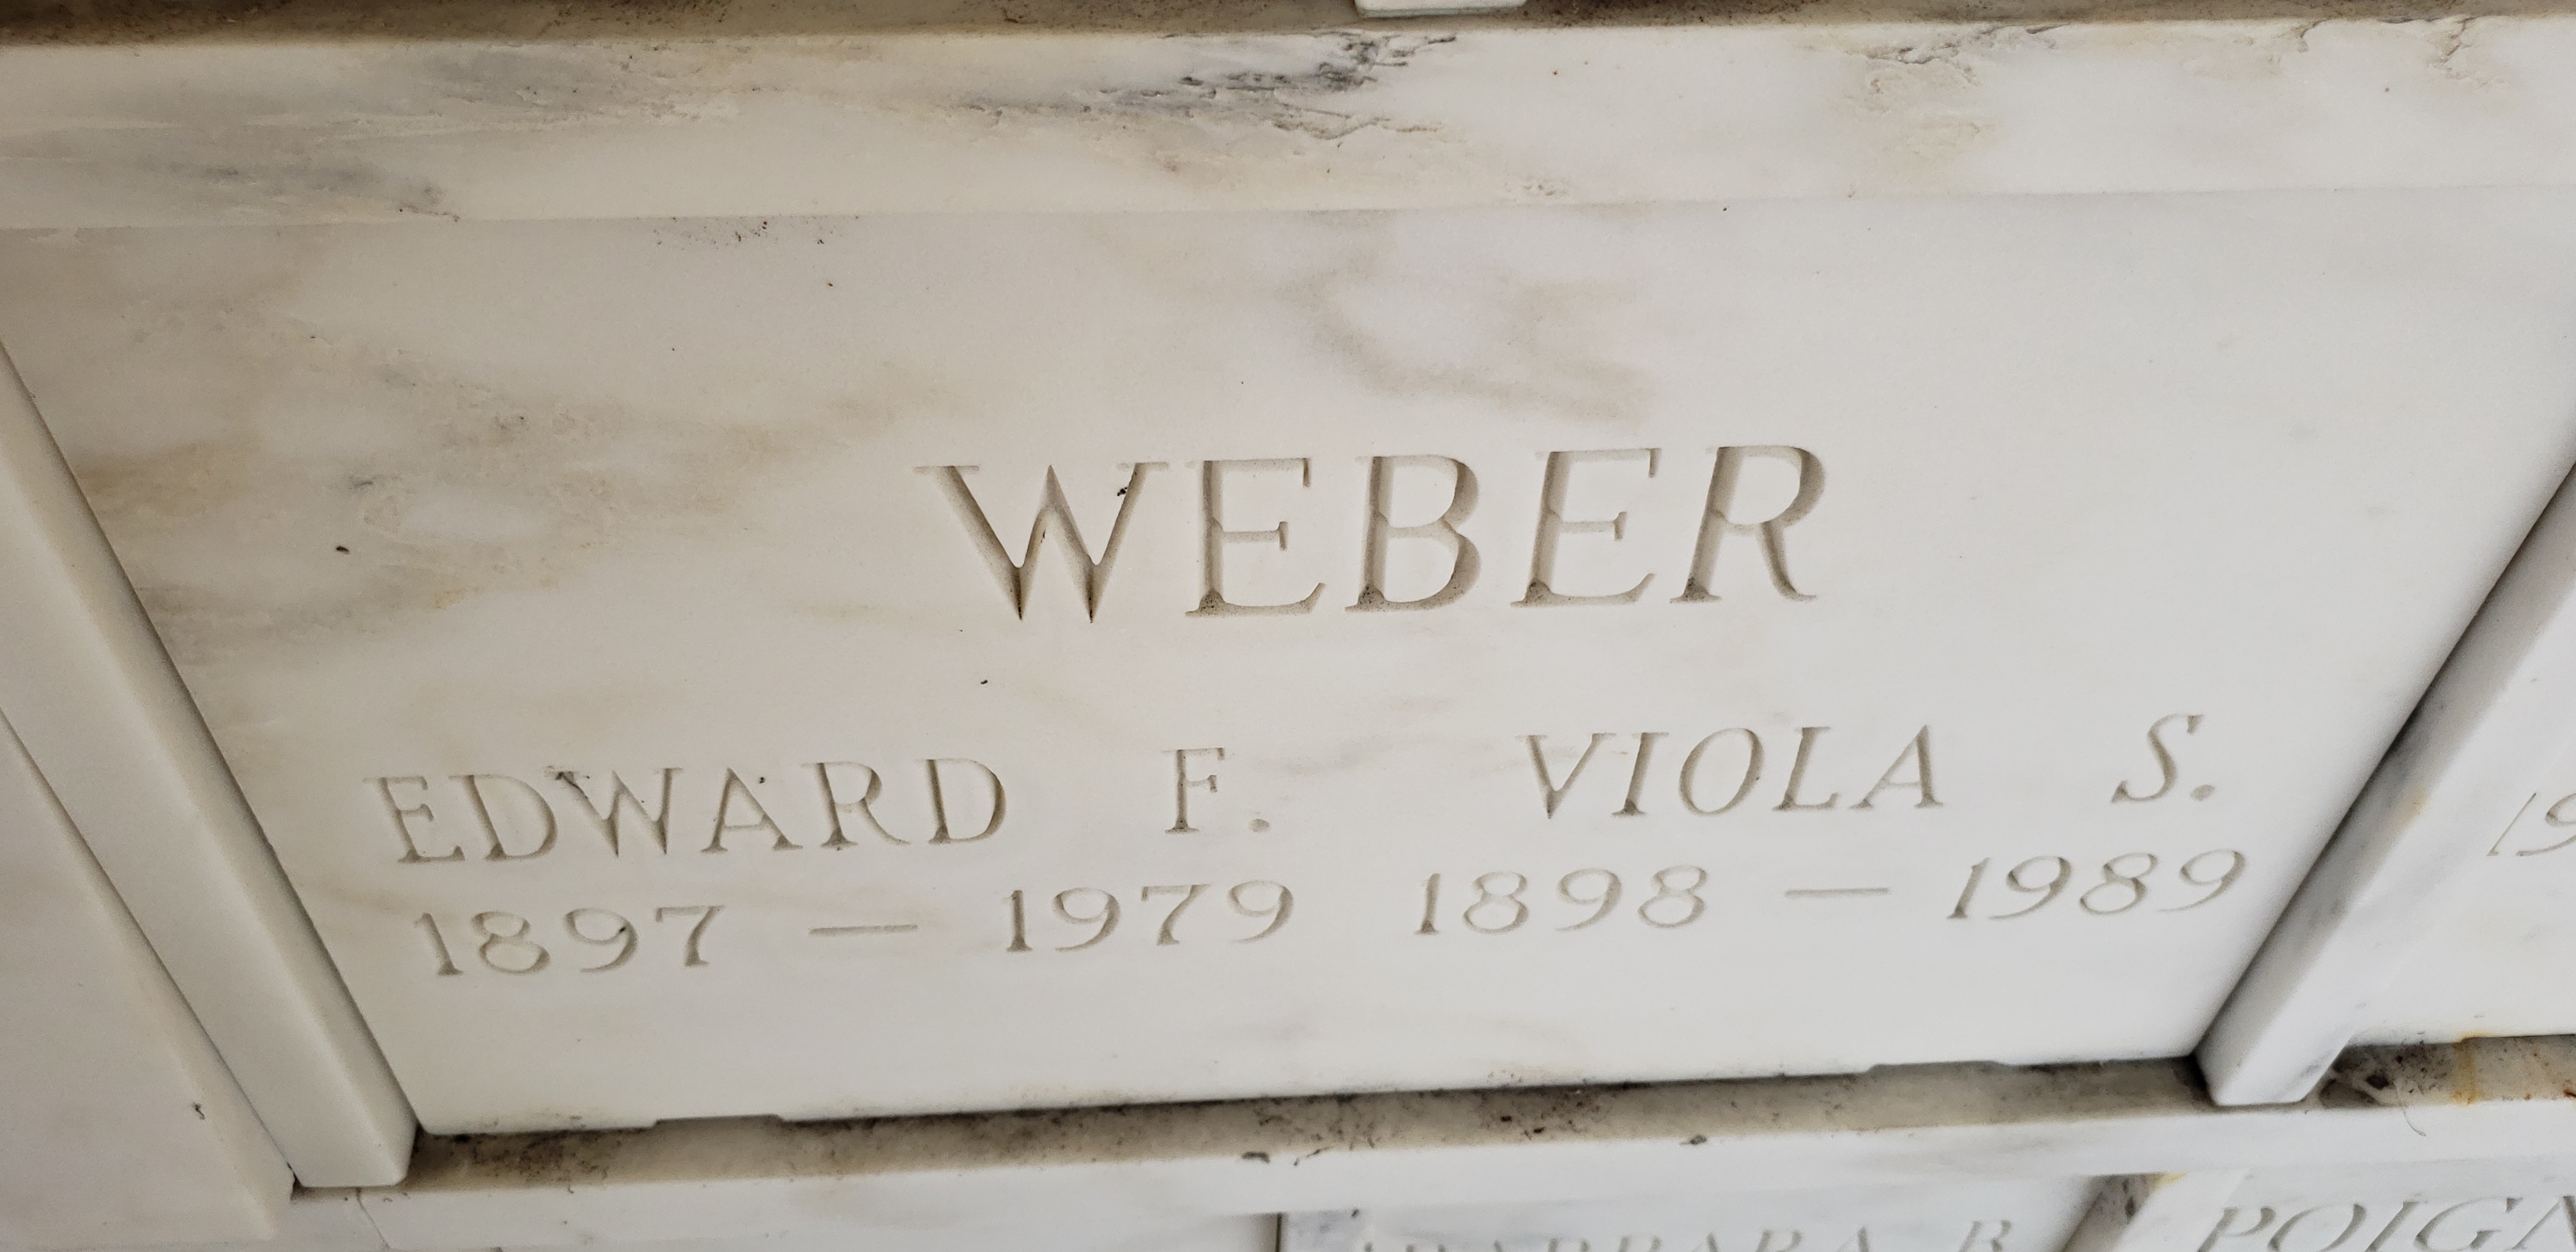 Viola S Weber